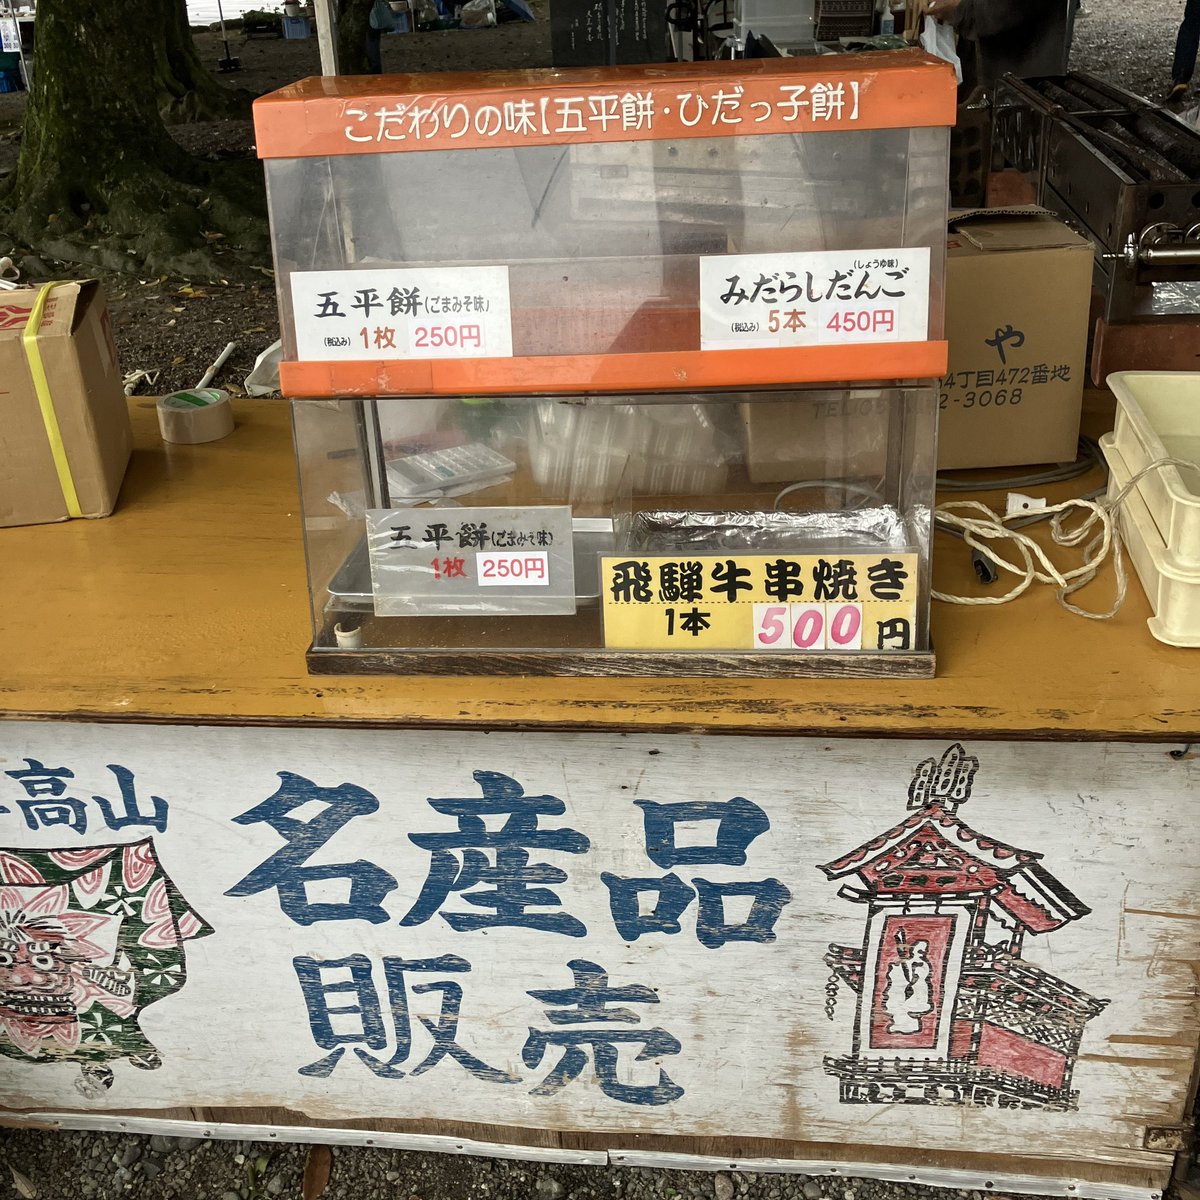 今朝は護国神社蚤の市に行きました。
到着は9時すぎてたのでケムリのススメさんは完売でしたが…。

富山市の山奥のそのまた山奥、大長谷のいのしし肉まんを食べました。
みたらし団子(高山)完売。
富山の古い紙モノ漁りは始めたら最後、数時間そこにいるので今回はパス。